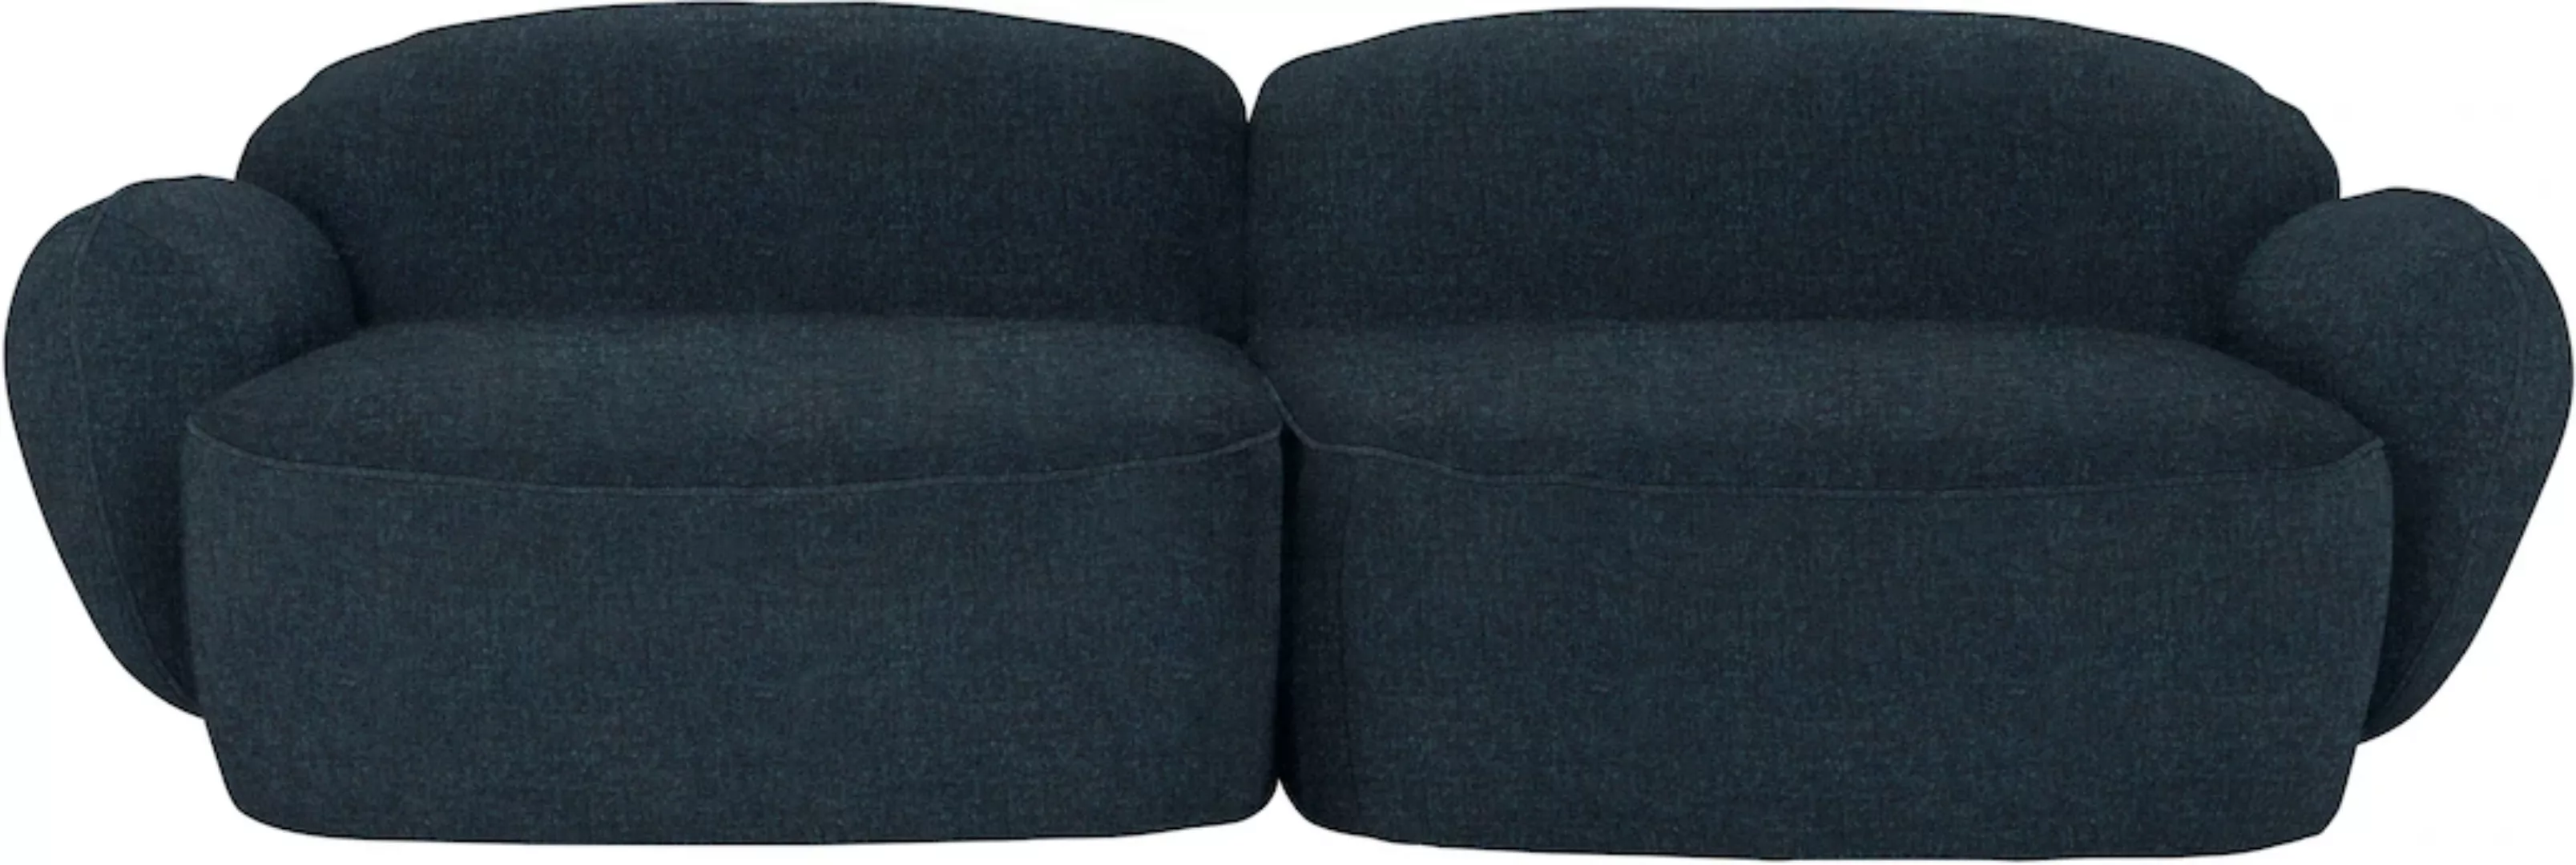 furninova 2,5-Sitzer "Bubble", komfortabel durch Memoryschaum, im skandinav günstig online kaufen